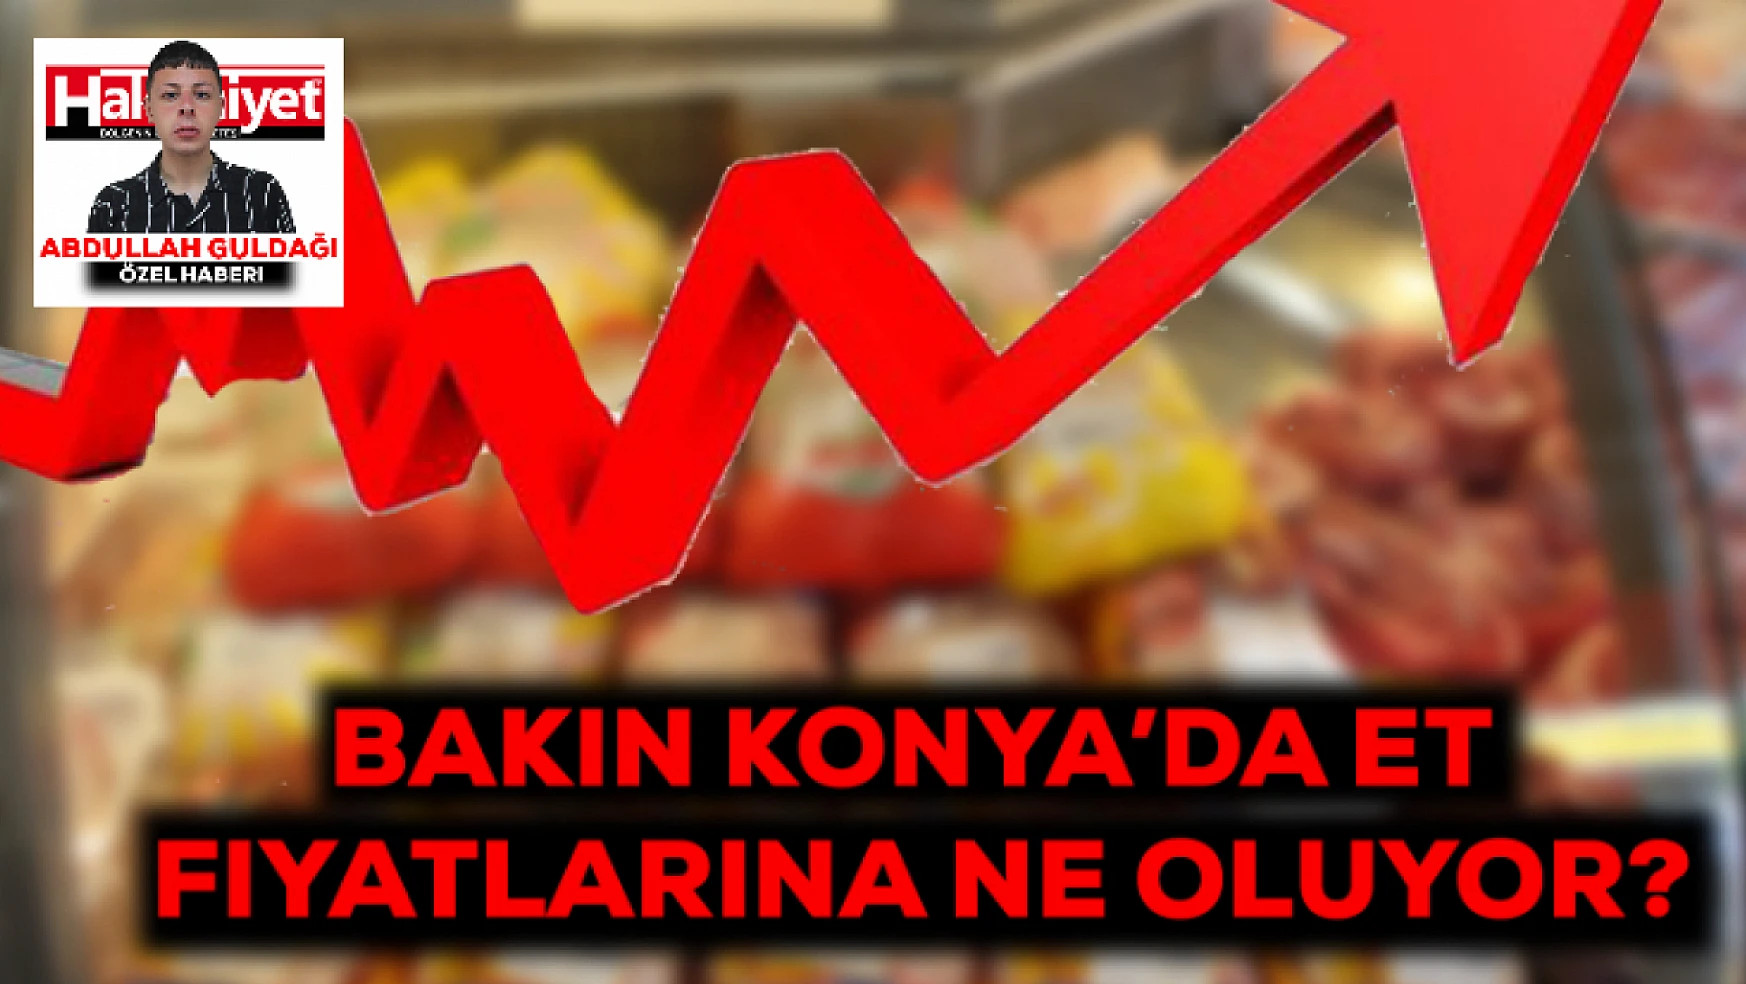 Bakın Konya'da et fiyatlarına neler oluyor?